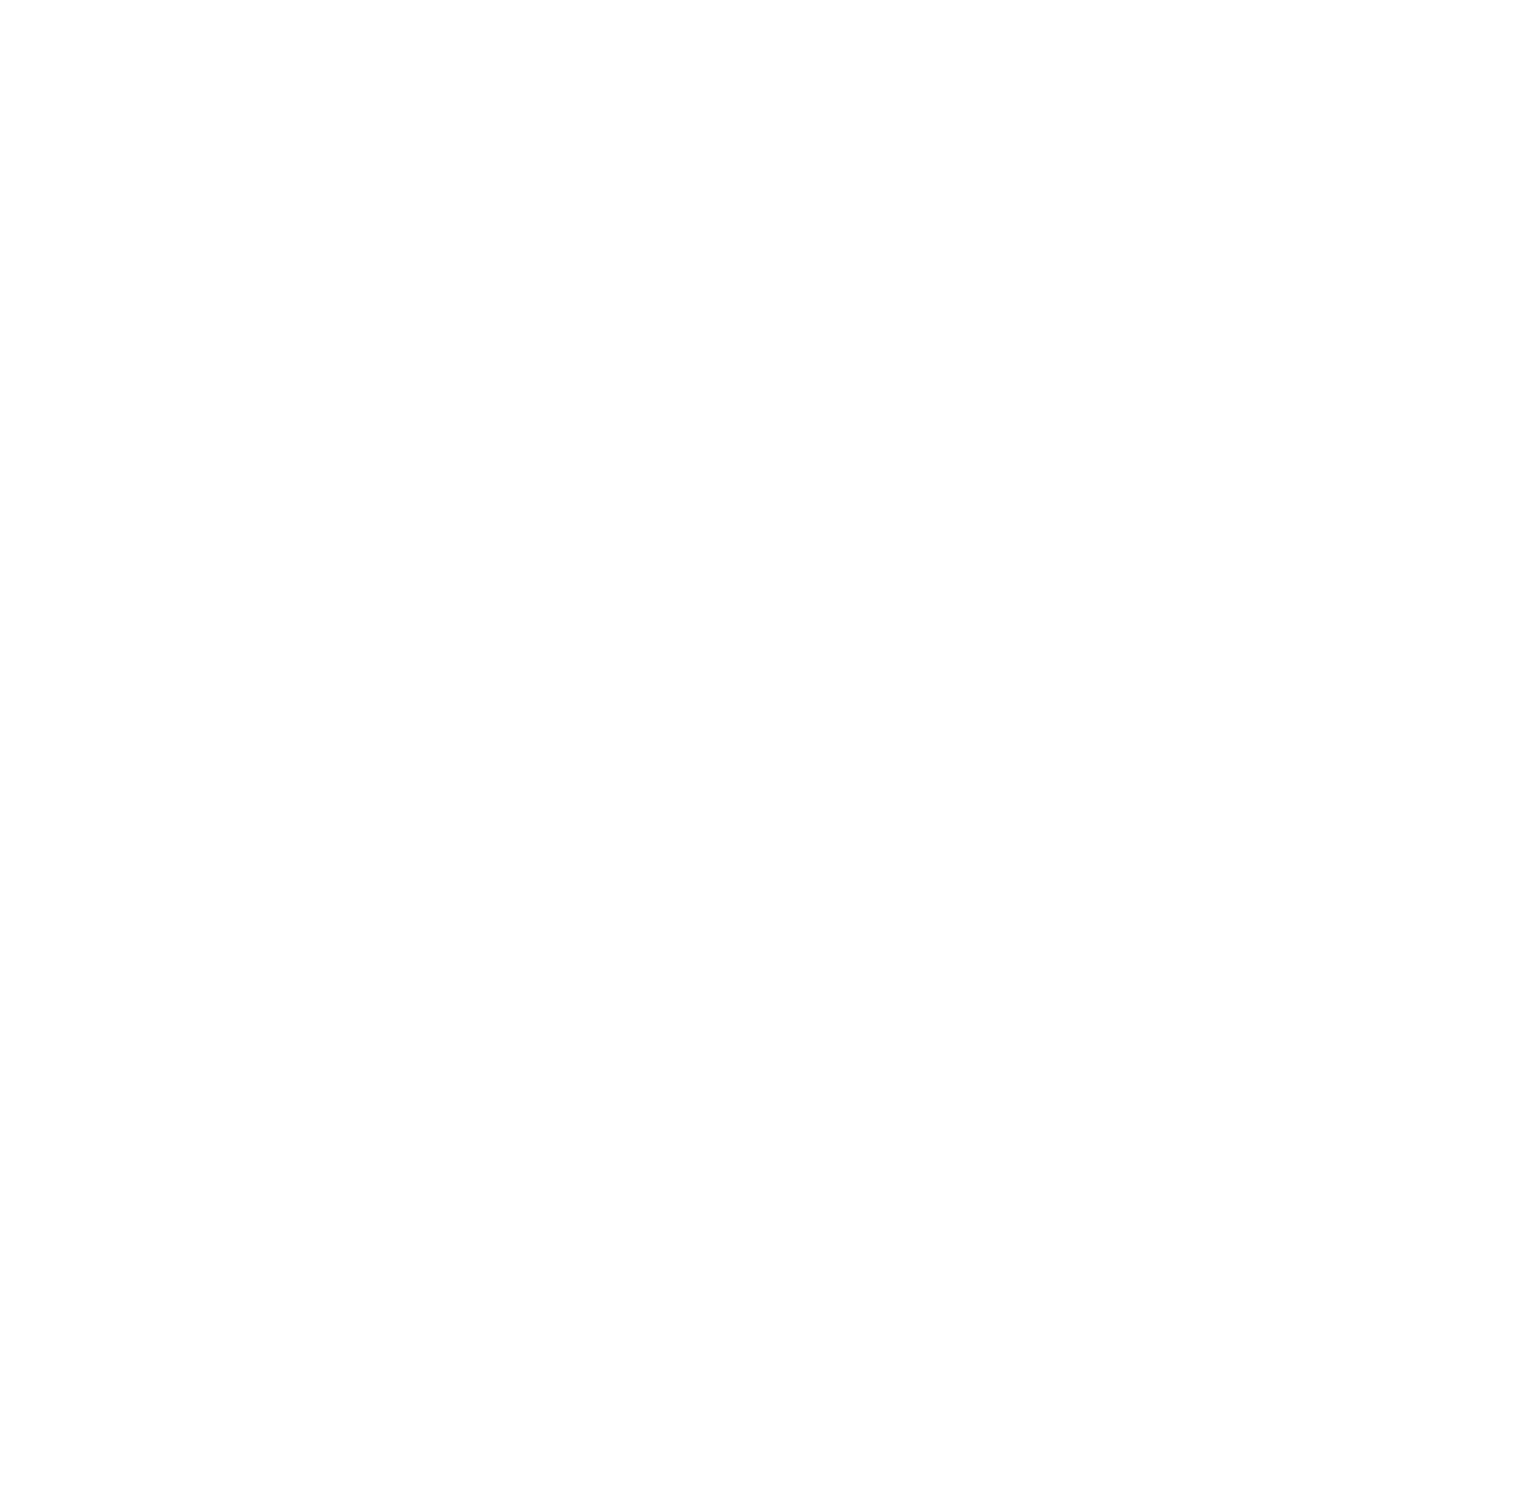 Finning logo for dark backgrounds (transparent PNG)